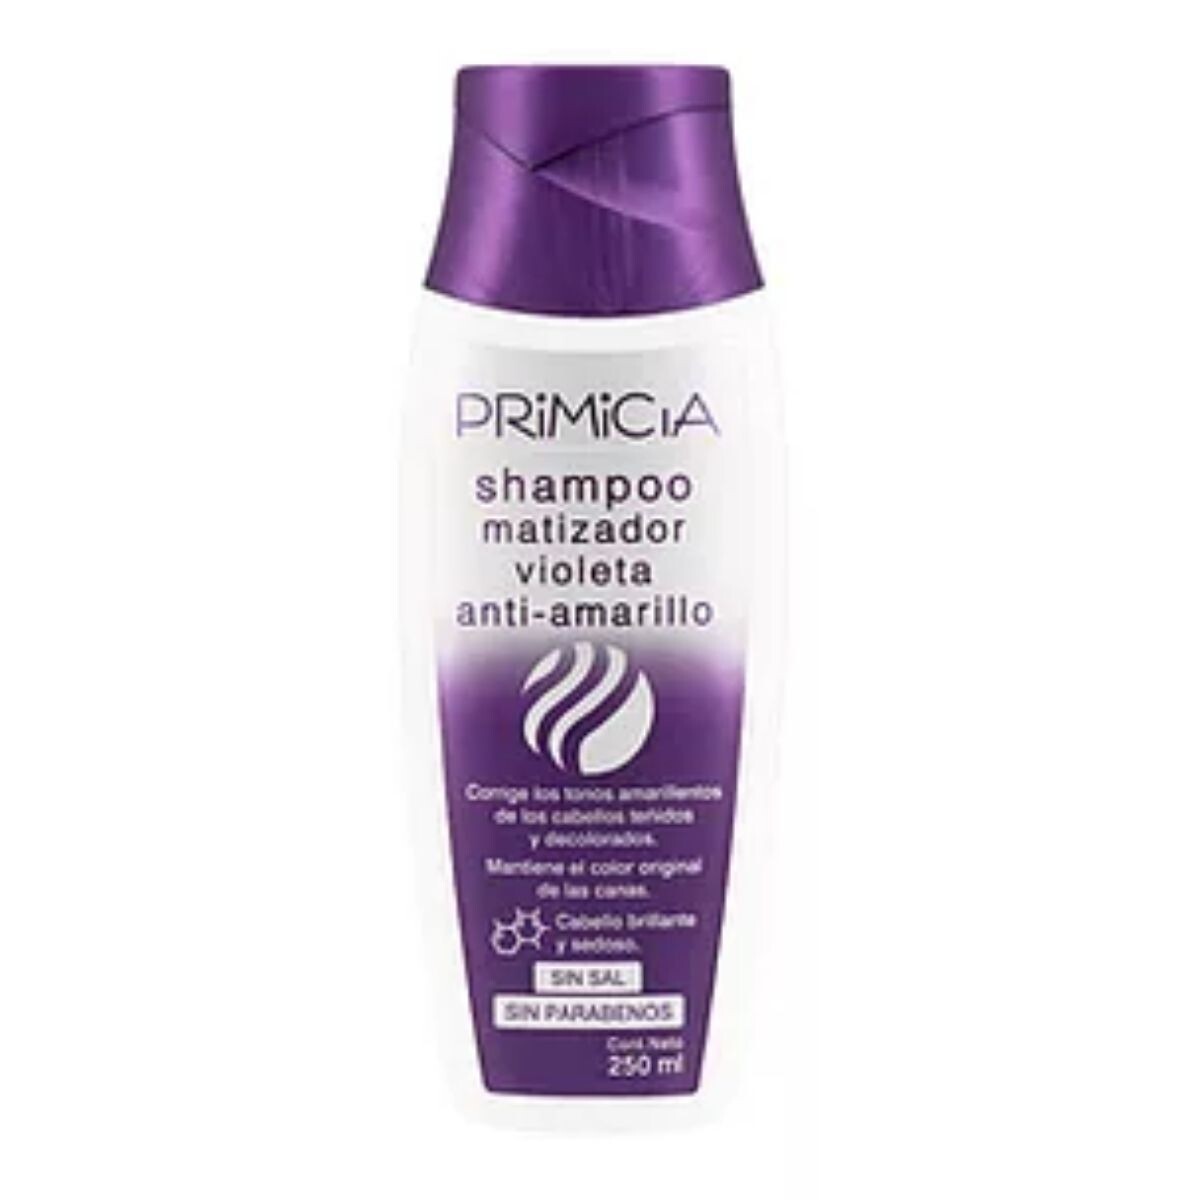 Shampoo Primicia Matizador Violeta Anti-Amarillo 250 ML 